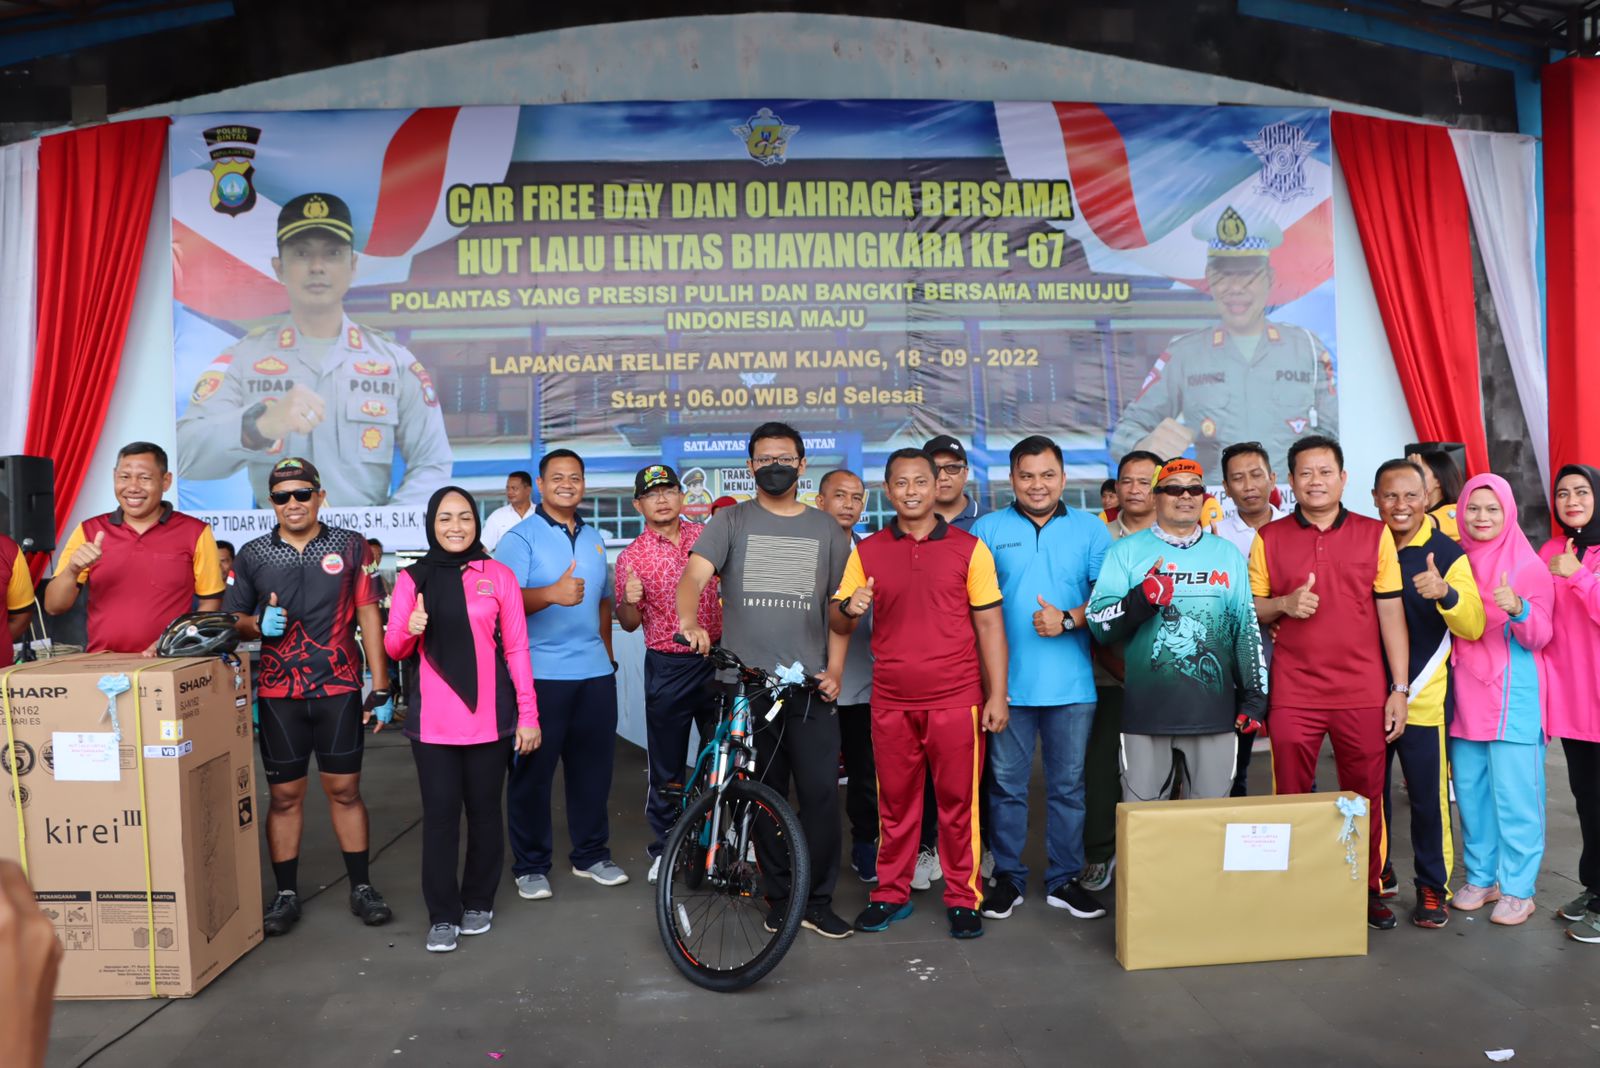 Polres Bintan Laksanakan Car free day serta olahraga bersama memperingati HUT Lalu Lintas Bhayangkara ke 67 Yang Diikuti oleh Ribuan Peserta